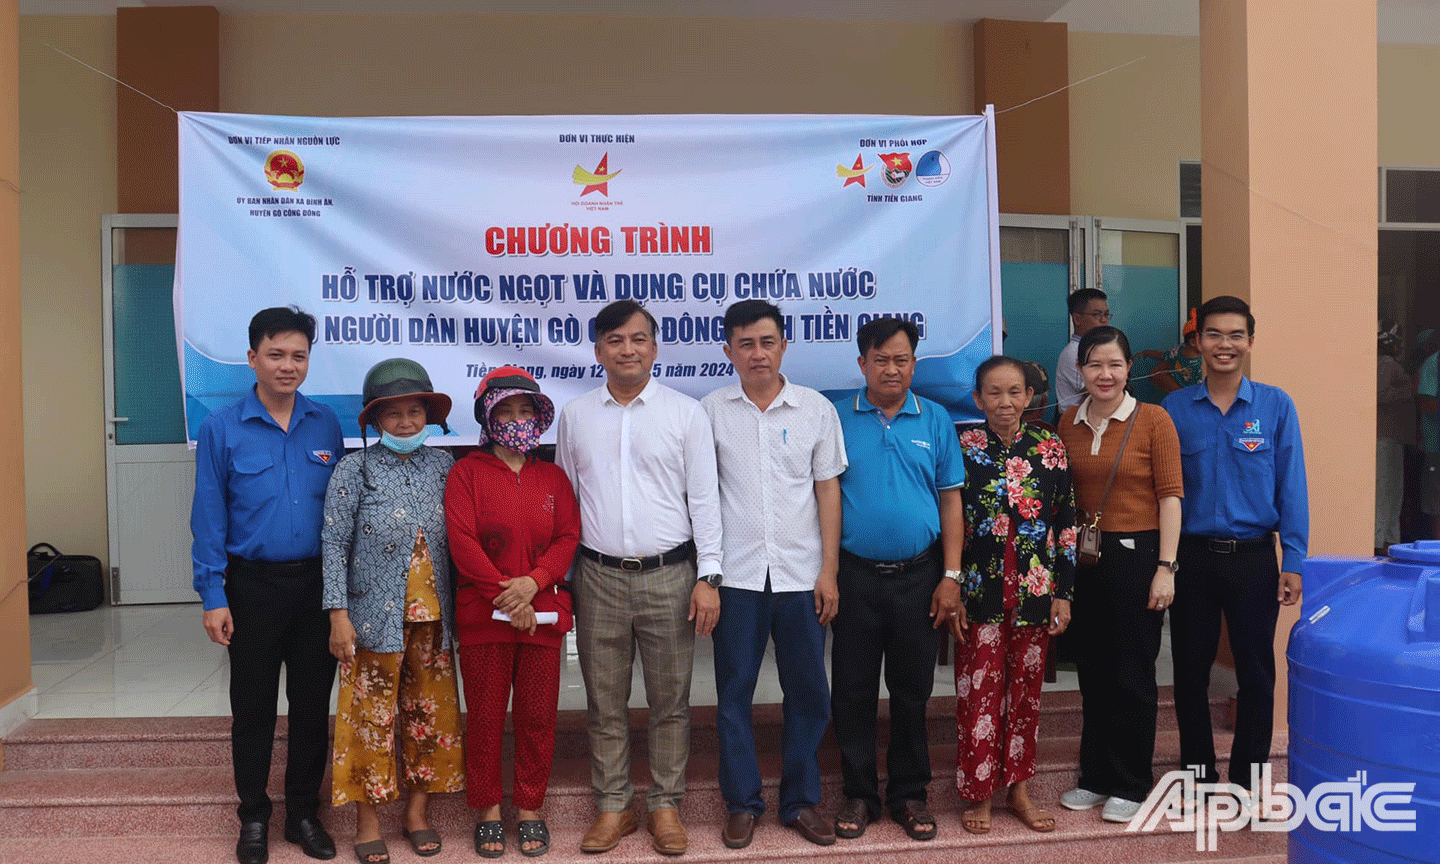 Chương trình hỗ trợ nước ngọt và dụng cụ chứa nước cho người dân huyện Gò Công Đông